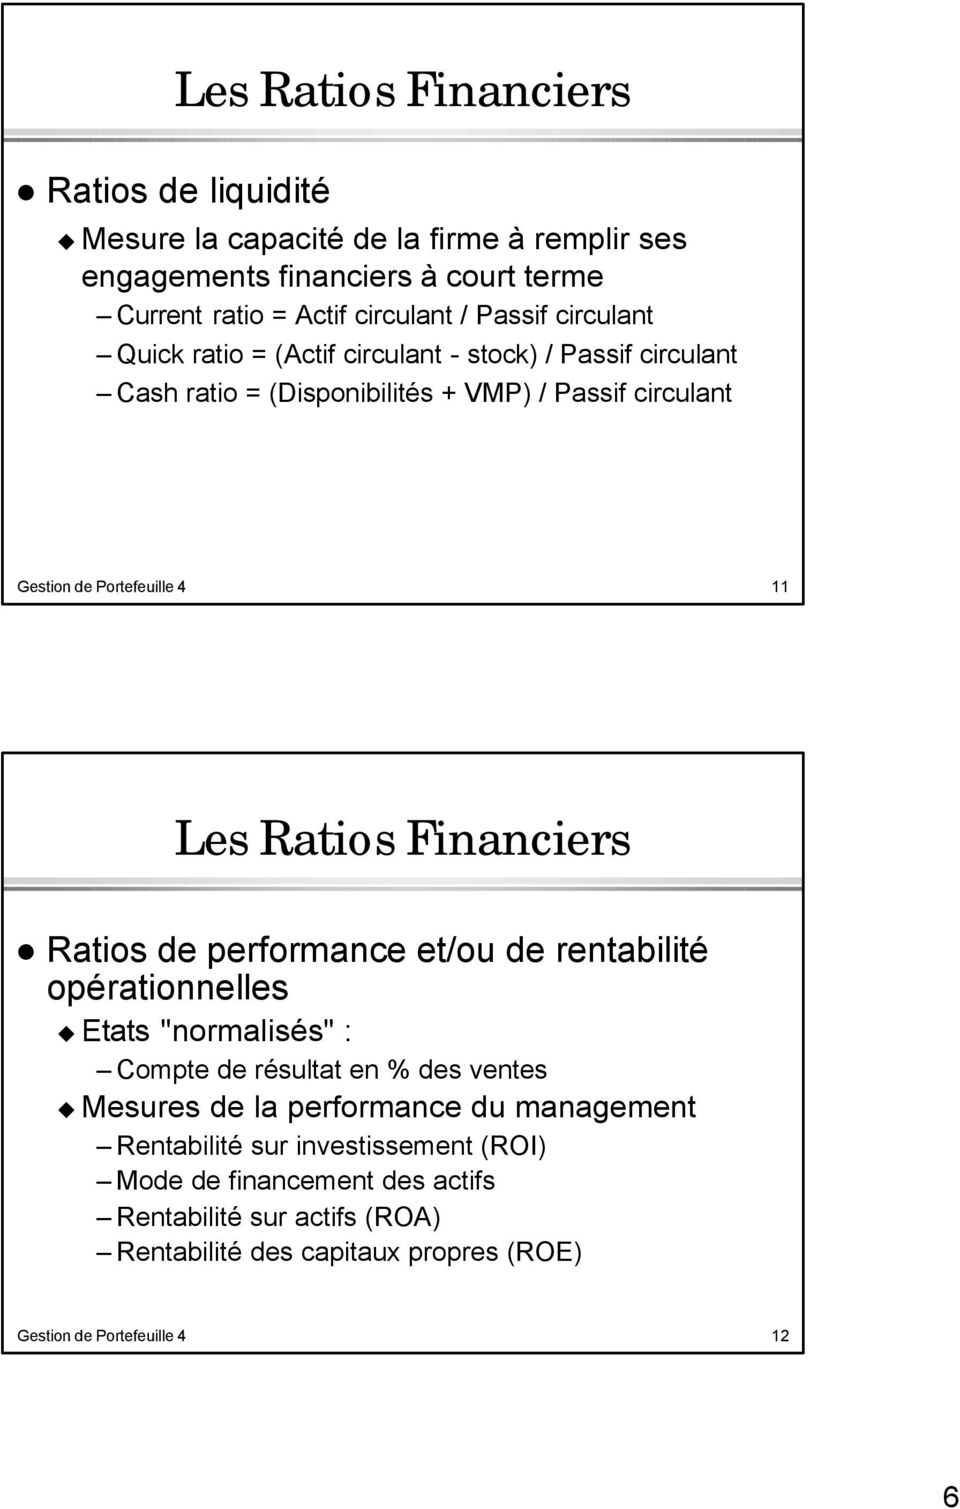 Financiers Ratios de performance et/ou de rentabilité opérationnelles Etats "normalisés" : Compte de résultat en % des ventes Mesures de la performance du management